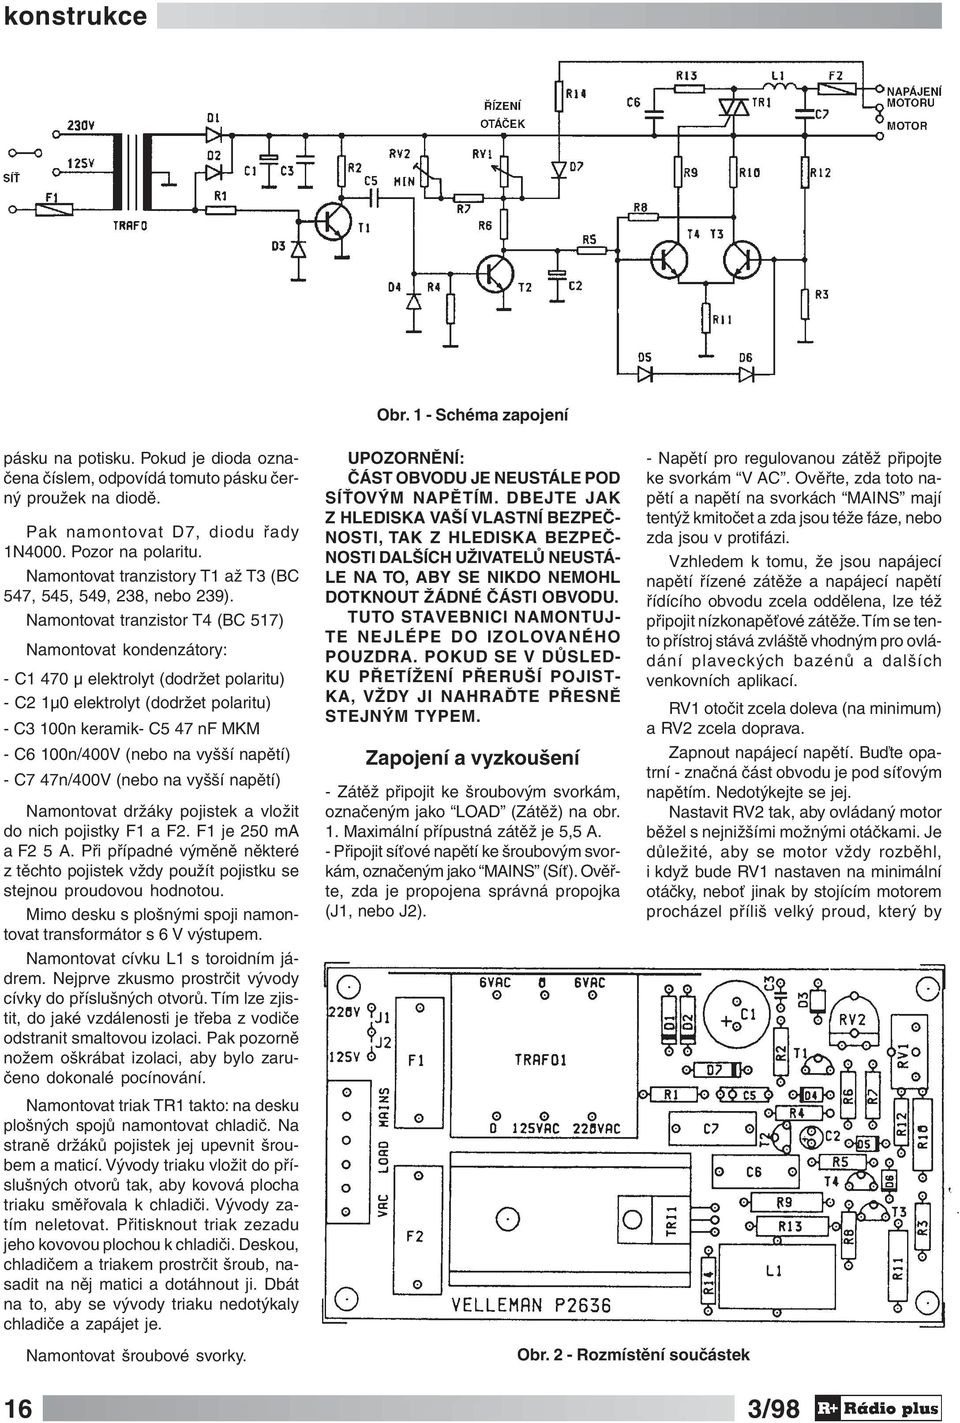 Namontovat tranzistor T4 (BC 517) Namontovat kondenzátory: - C1 470 μ elektrolyt (dodržet polaritu) - C2 1μ0 elektrolyt (dodržet polaritu) - C3 100n keramik- C5 47 nf MKM - C6 100n/400V (nebo na